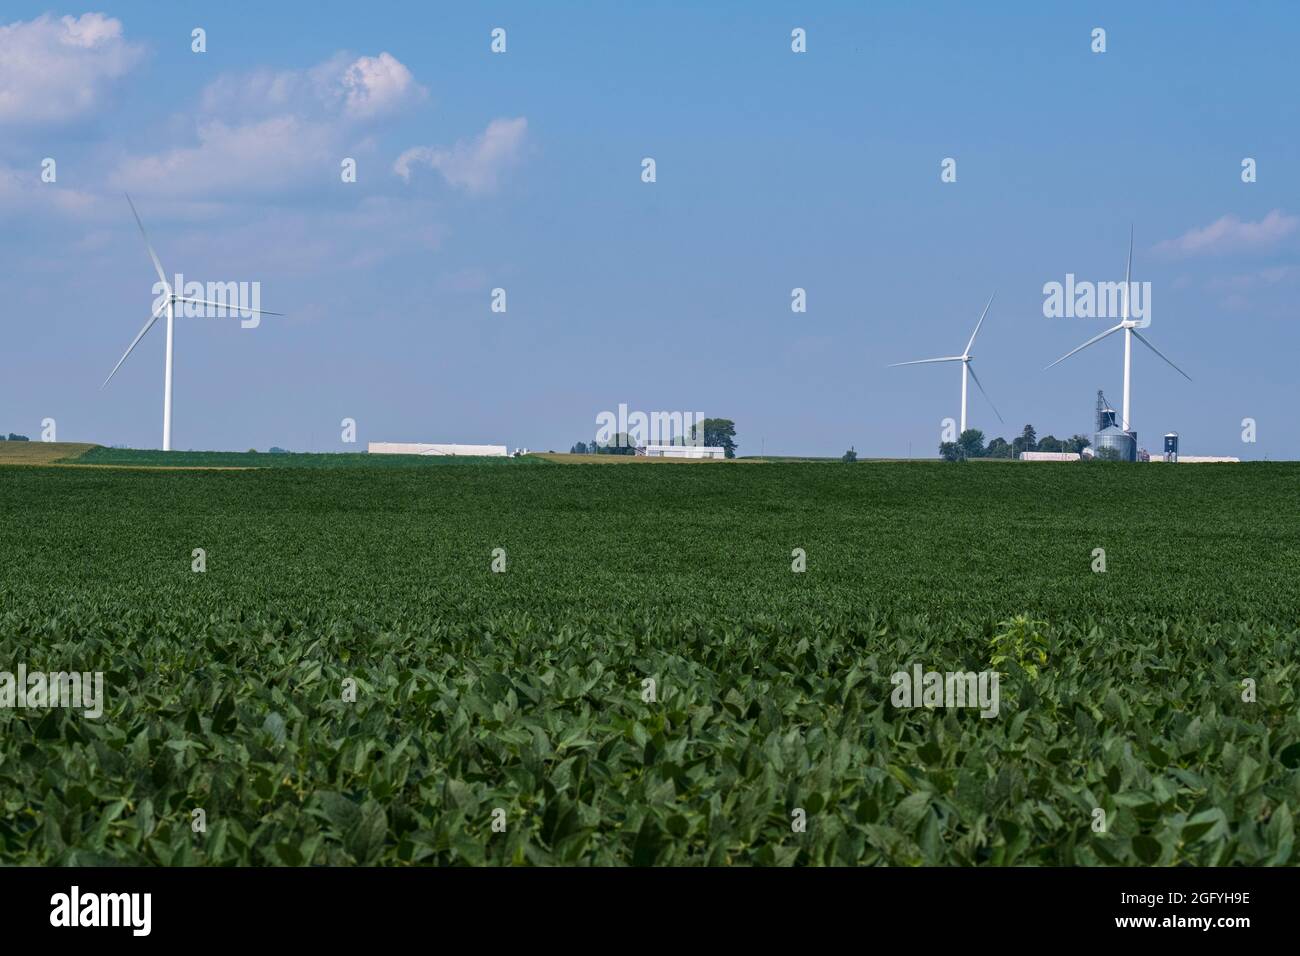 Près de Earlville, Iowa. Moulins à vent et bacs de stockage de grain. Fèves de soja au premier plan. Banque D'Images